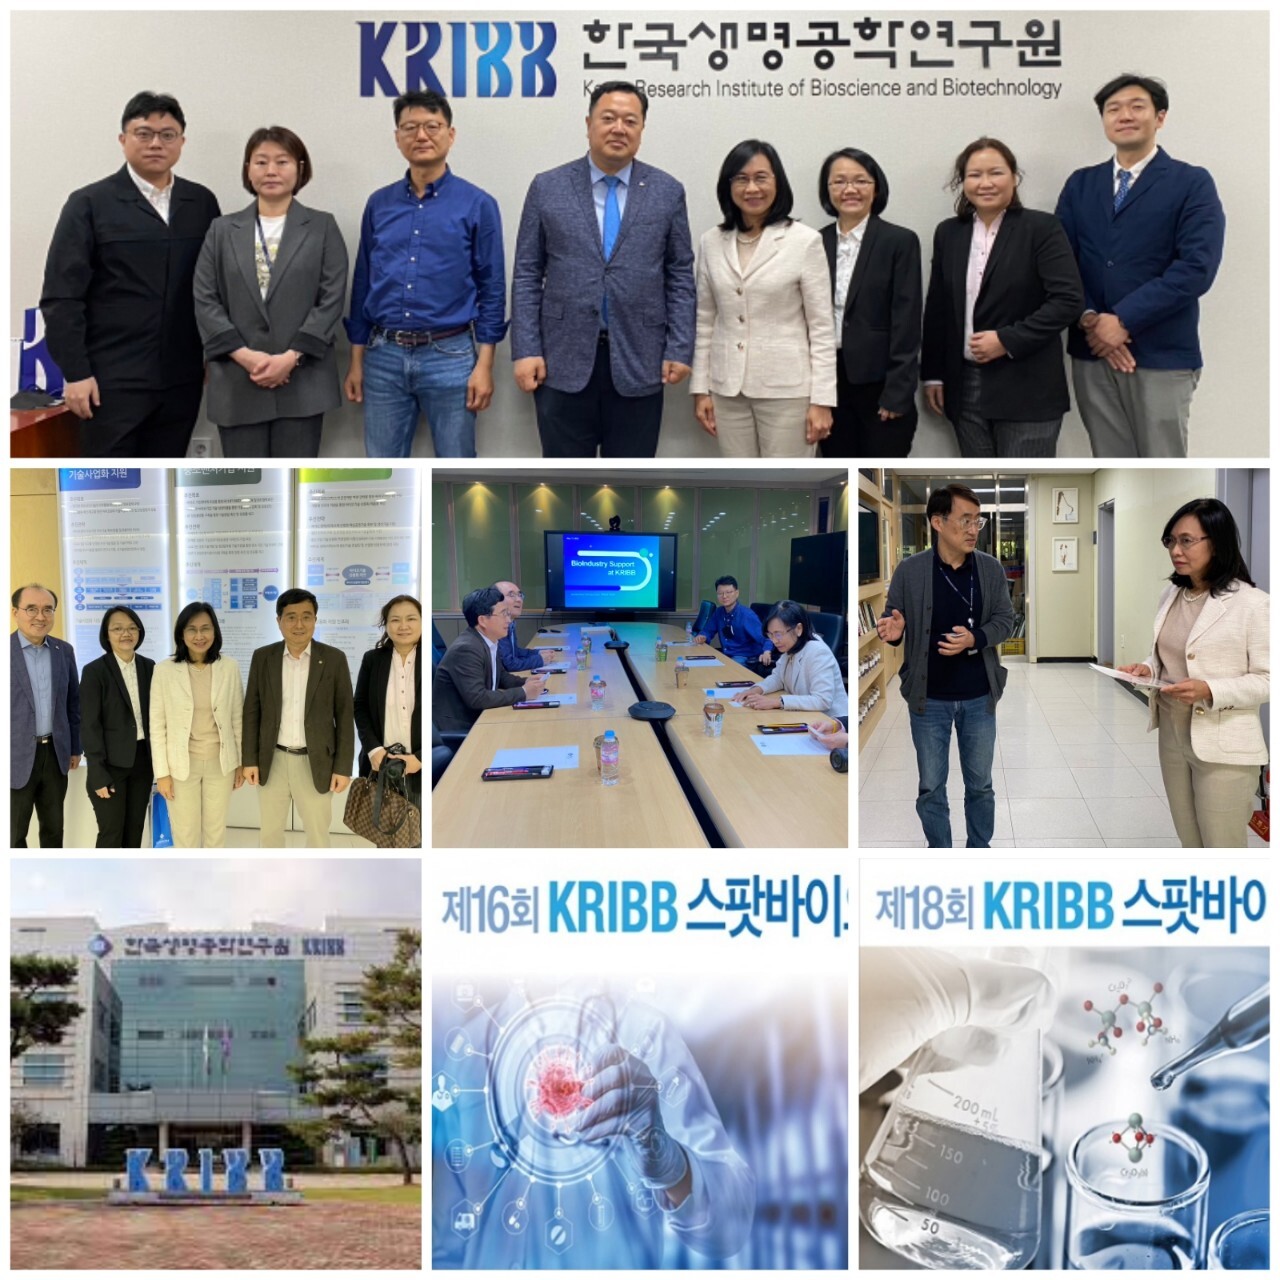 วว. / KRIBB เกาหลีใต้ ร่วมหารือขับเคลื่อนเศรษฐกิจใหม่ ด้วยเทคโนโลยีชีวภาพ วัสดุชีวภาพ และการถ่ายทอดเทคโนโลยี